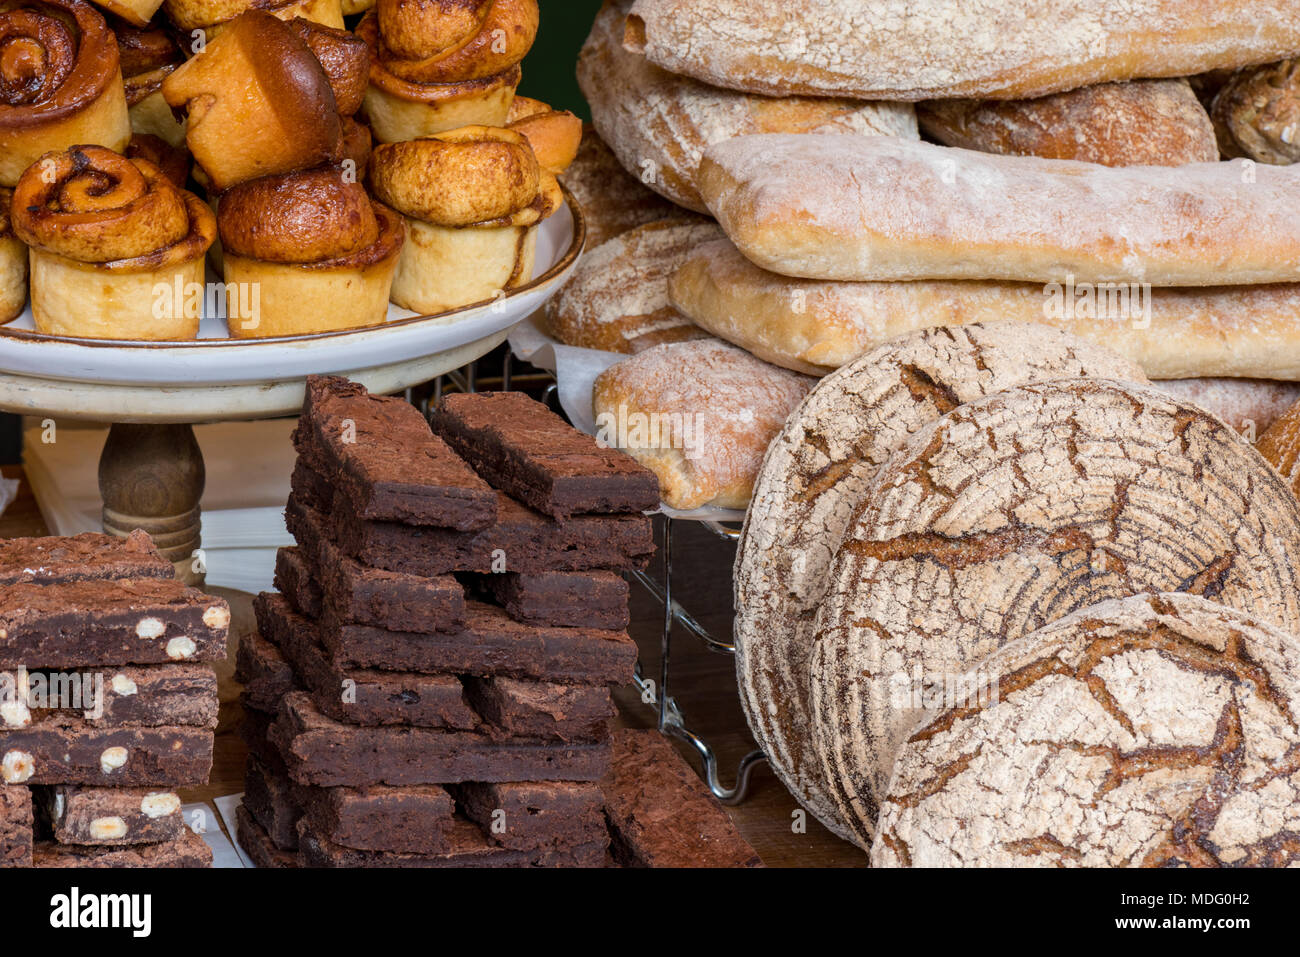 Una selezione di dolci e prodotti da forno in un forno artigianale o di  stallo bakers